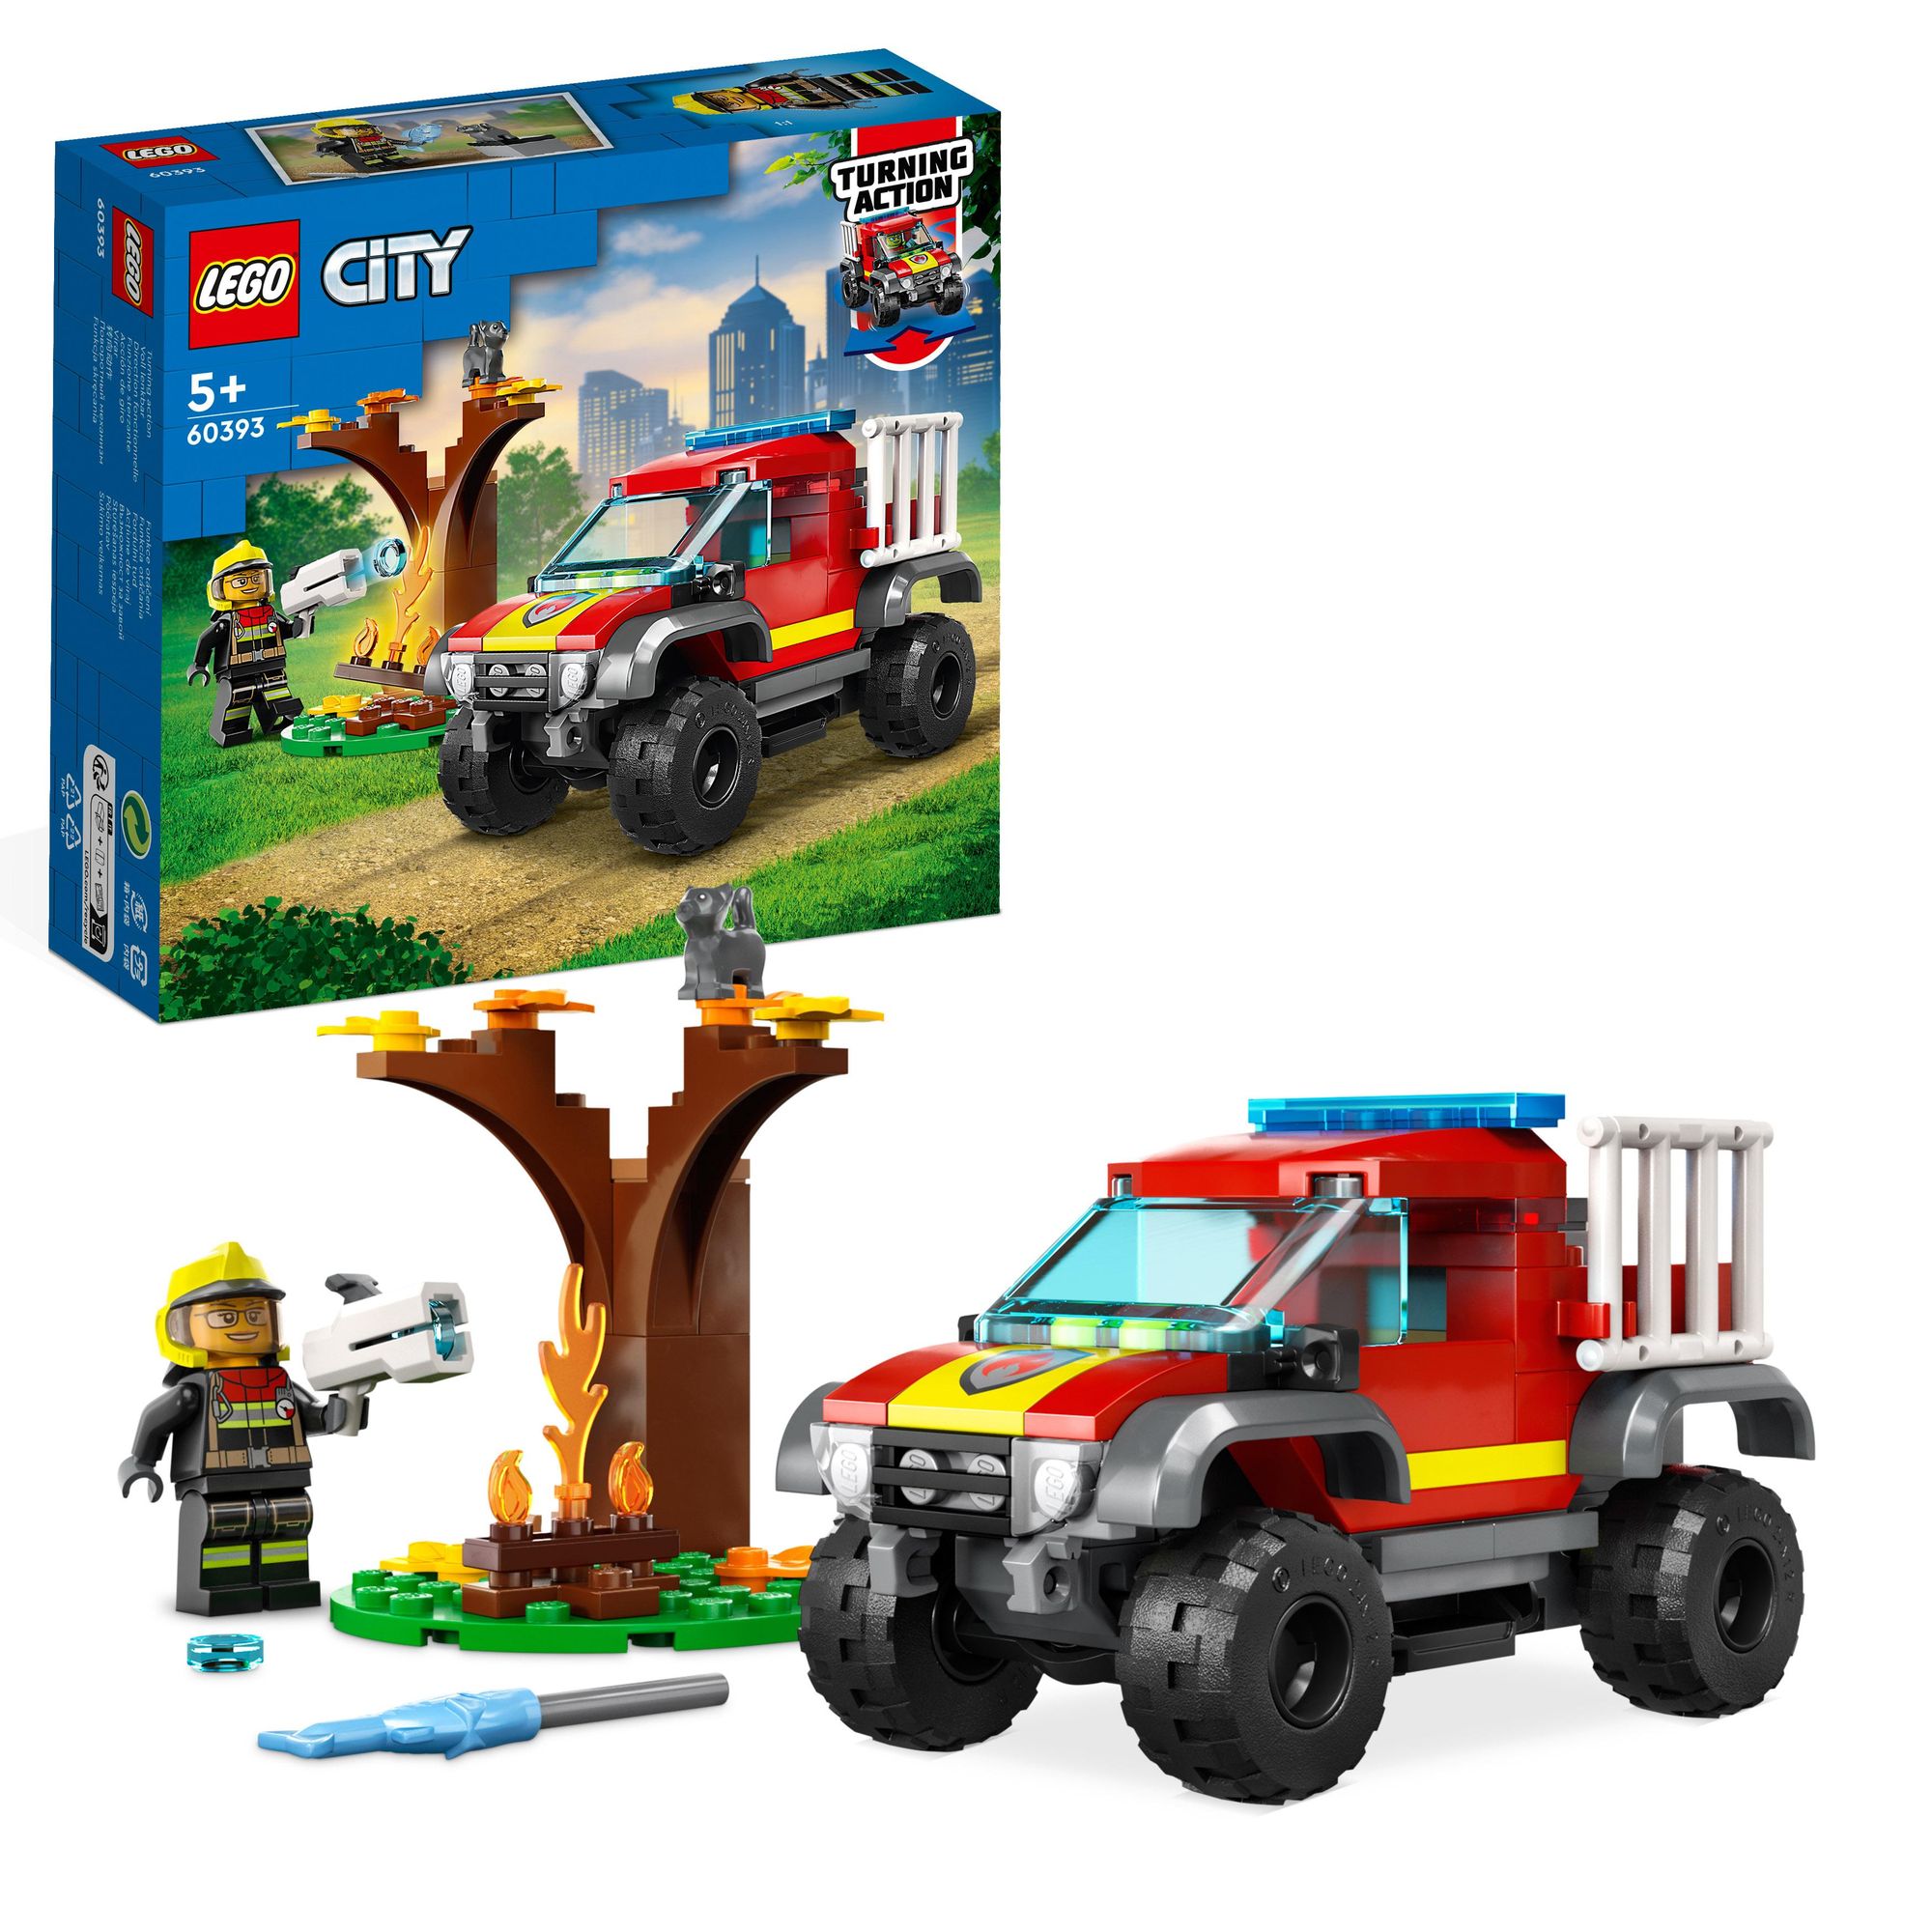 LEGO City 60393 Feuerwehr-Pickup, Feuerwehrauto-Spielzeug' kaufen -  Spielwaren